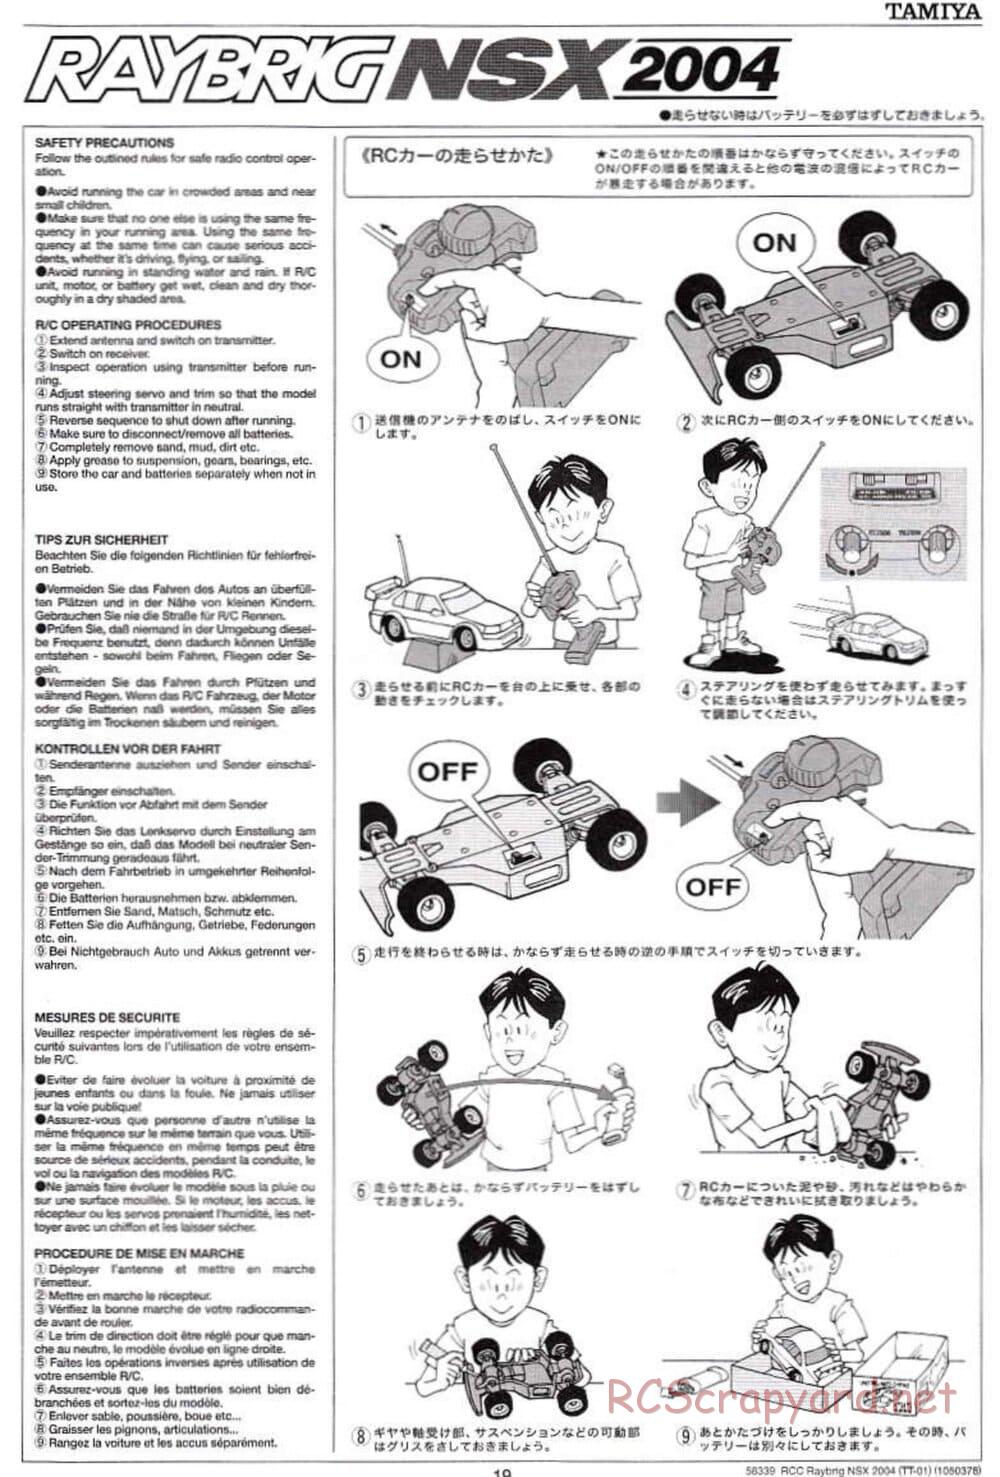 Tamiya - Raybrig NSX 2004 Chassis - Manual - Page 19